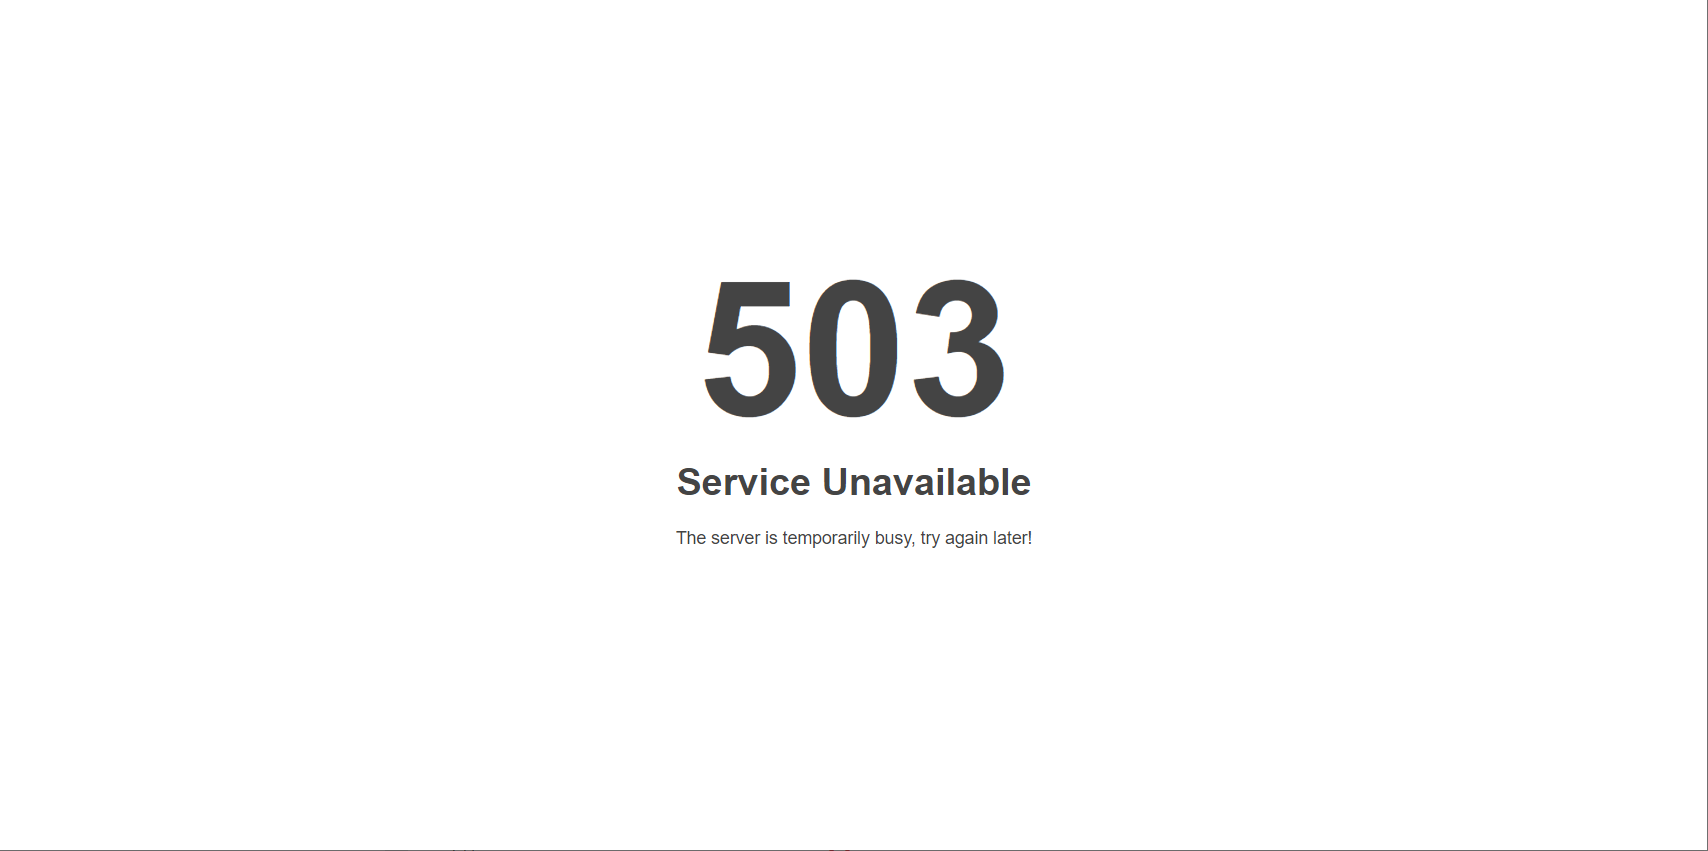 워드프레스 WPML 플러그인: 503 Service Unavailable 오류 발생 시 확인 사항